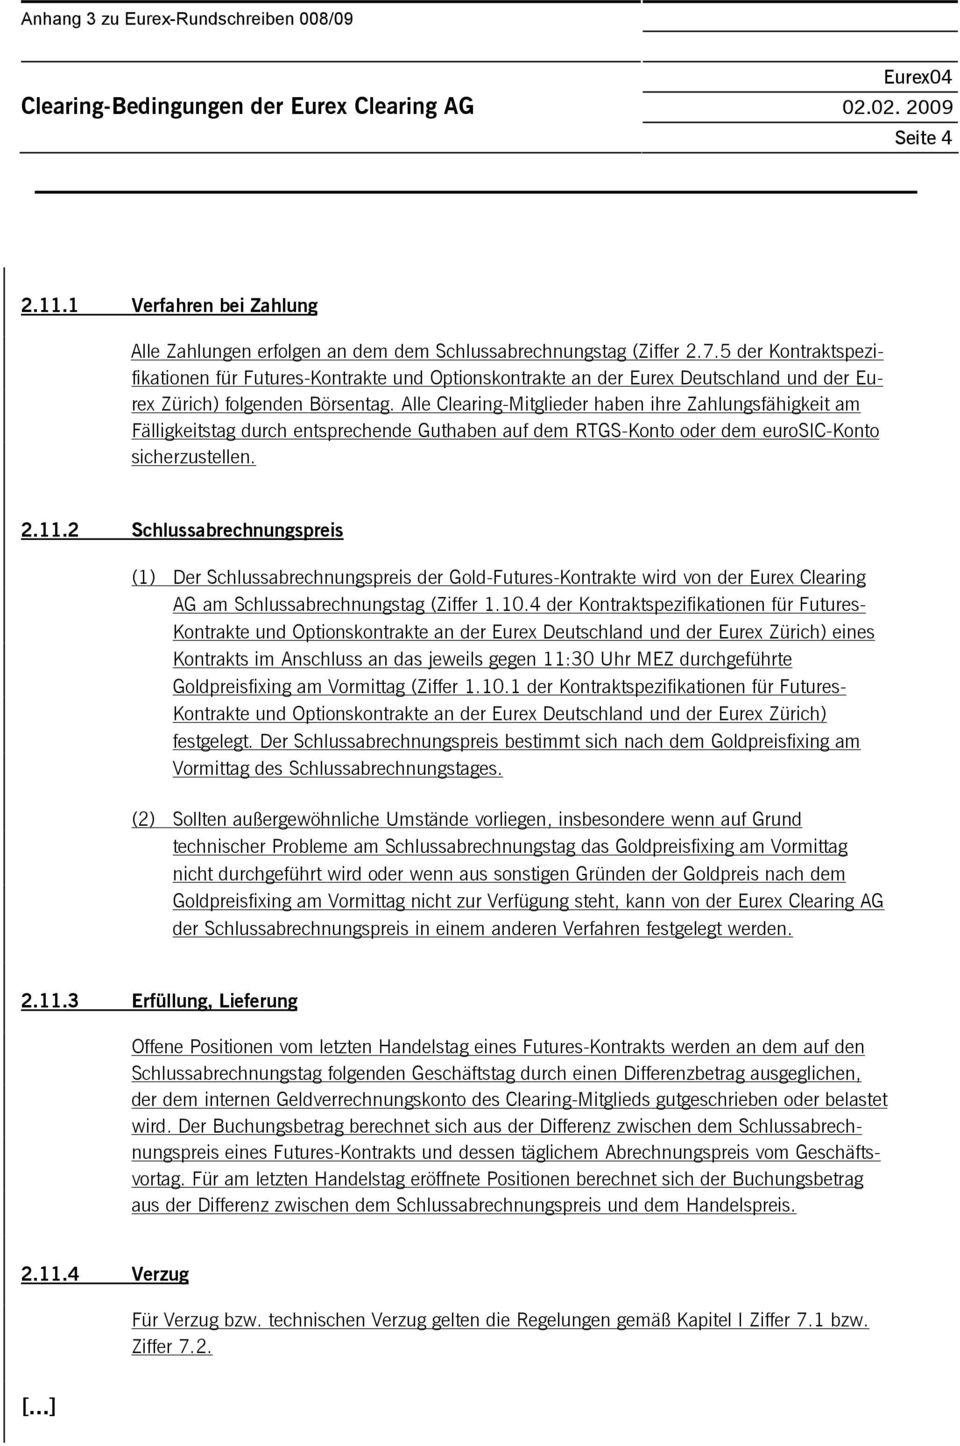 5 der spezifikationen für Futures-e und Optionskontrakte an der Eurex Deutschland und der Eurex Zürich) folgenden Börsentag.